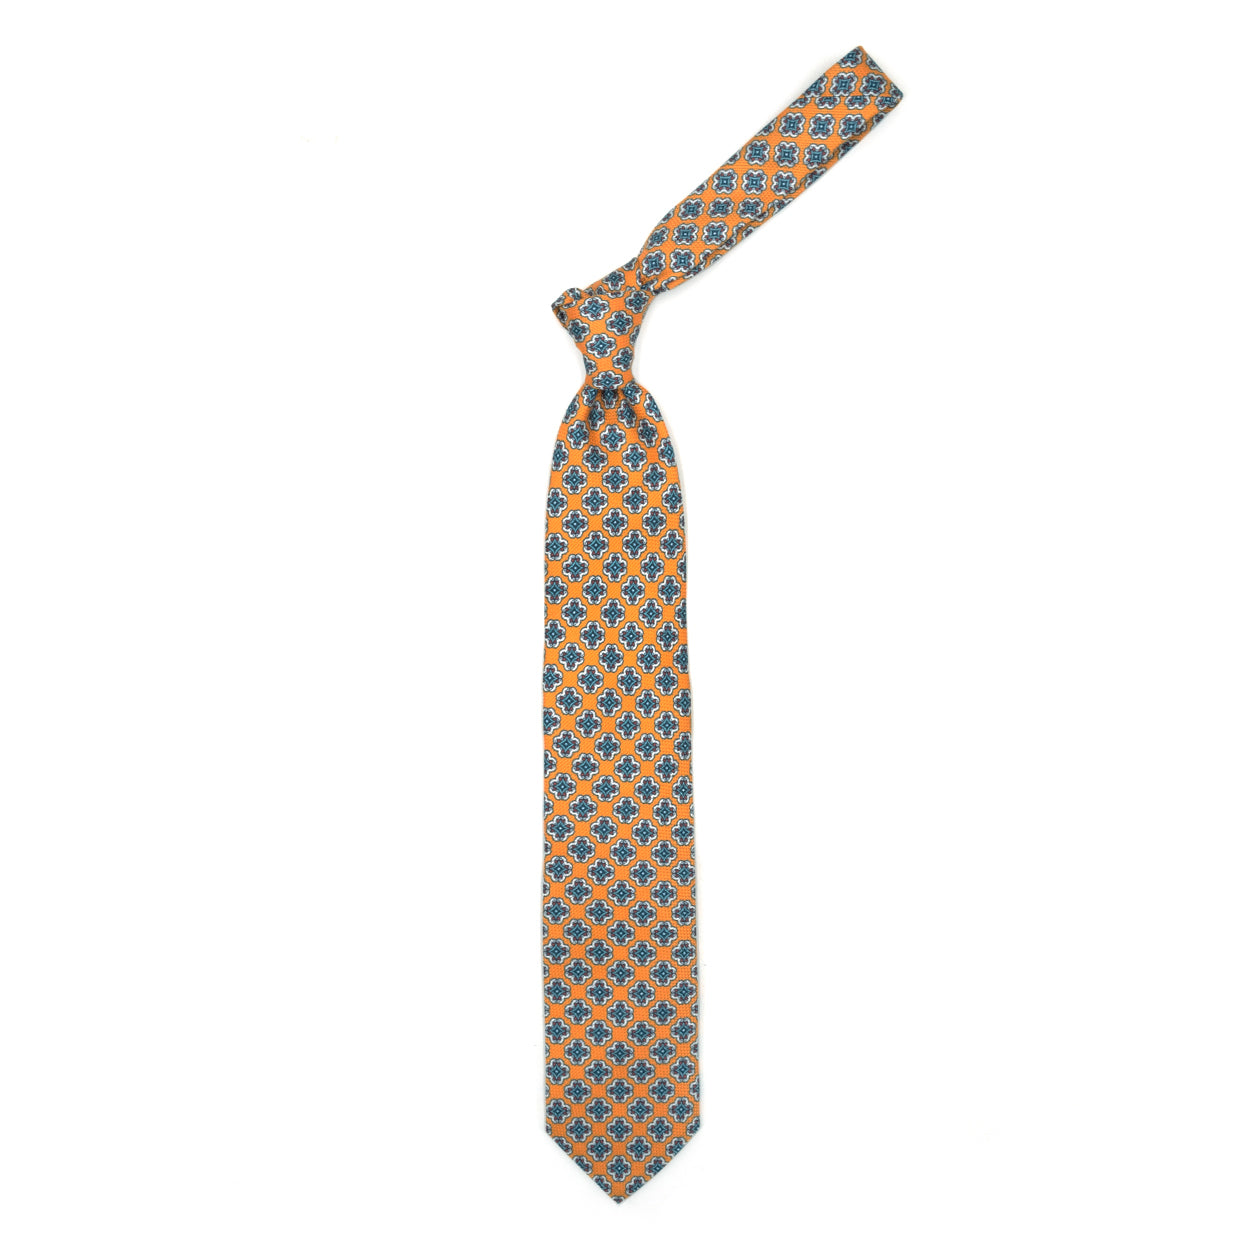 Cravatta arancione con medaglioni colorati